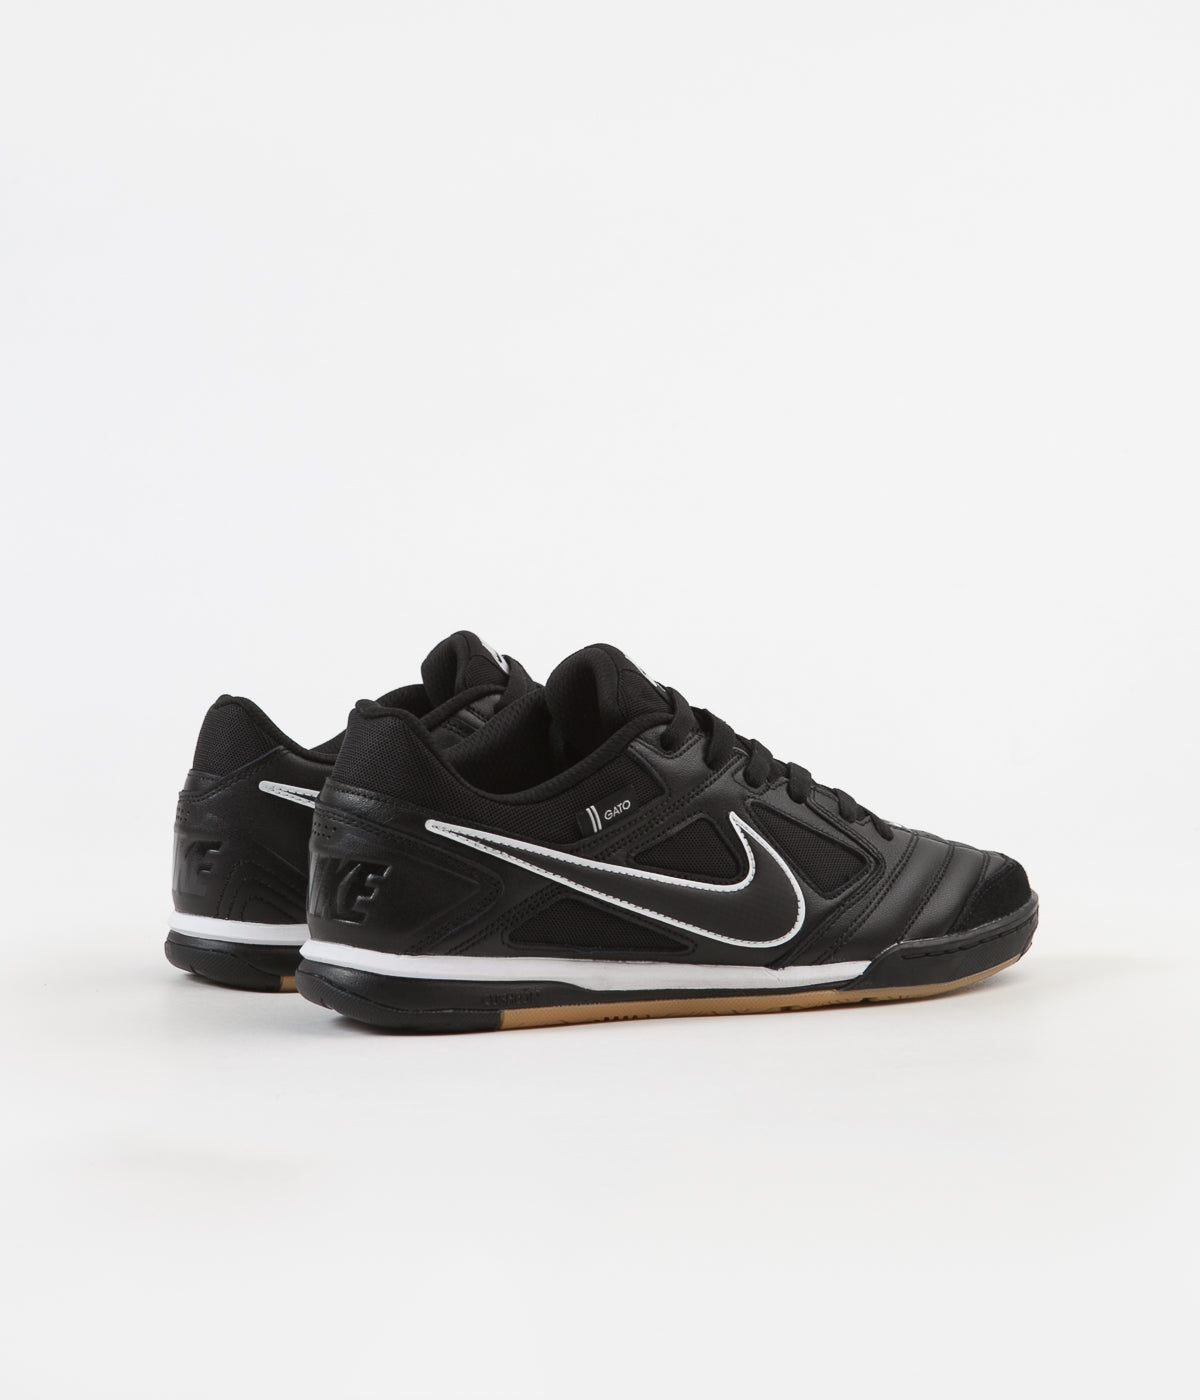 Nike SB Gato Shoes - Black / Black 